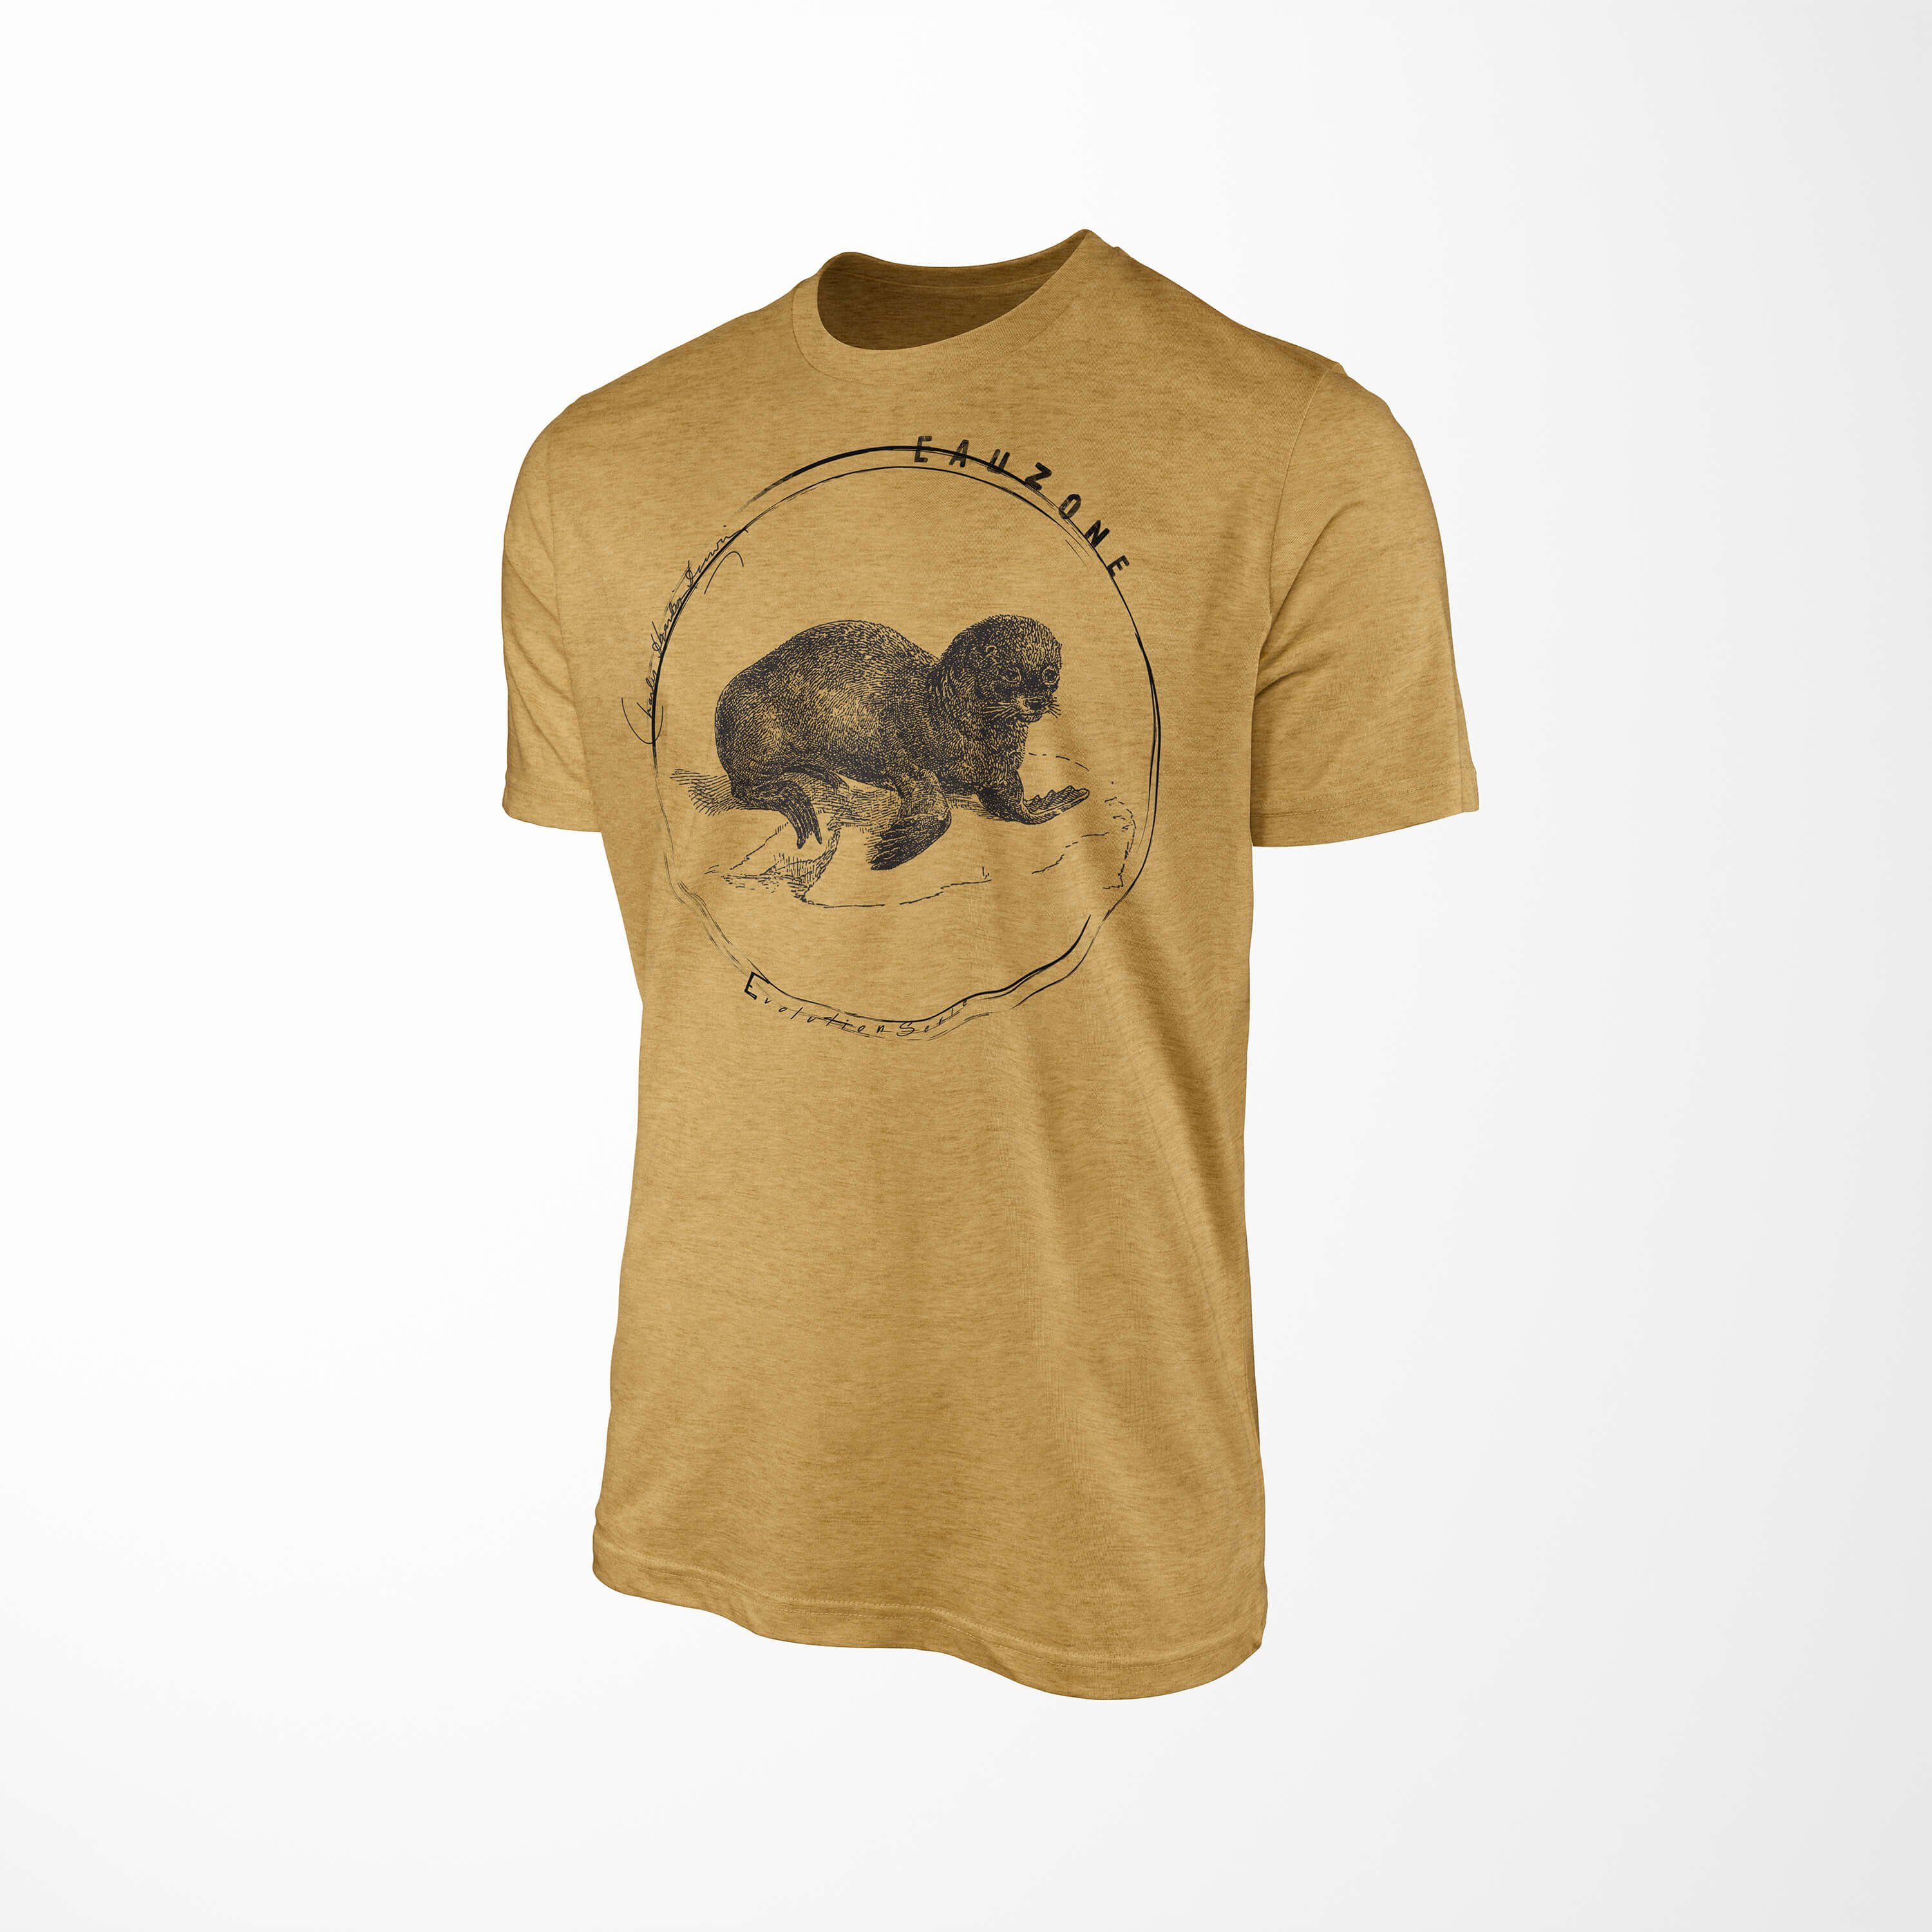 T-Shirt Antique Herren Gold Evolution T-Shirt Seelöwe Sinus Art